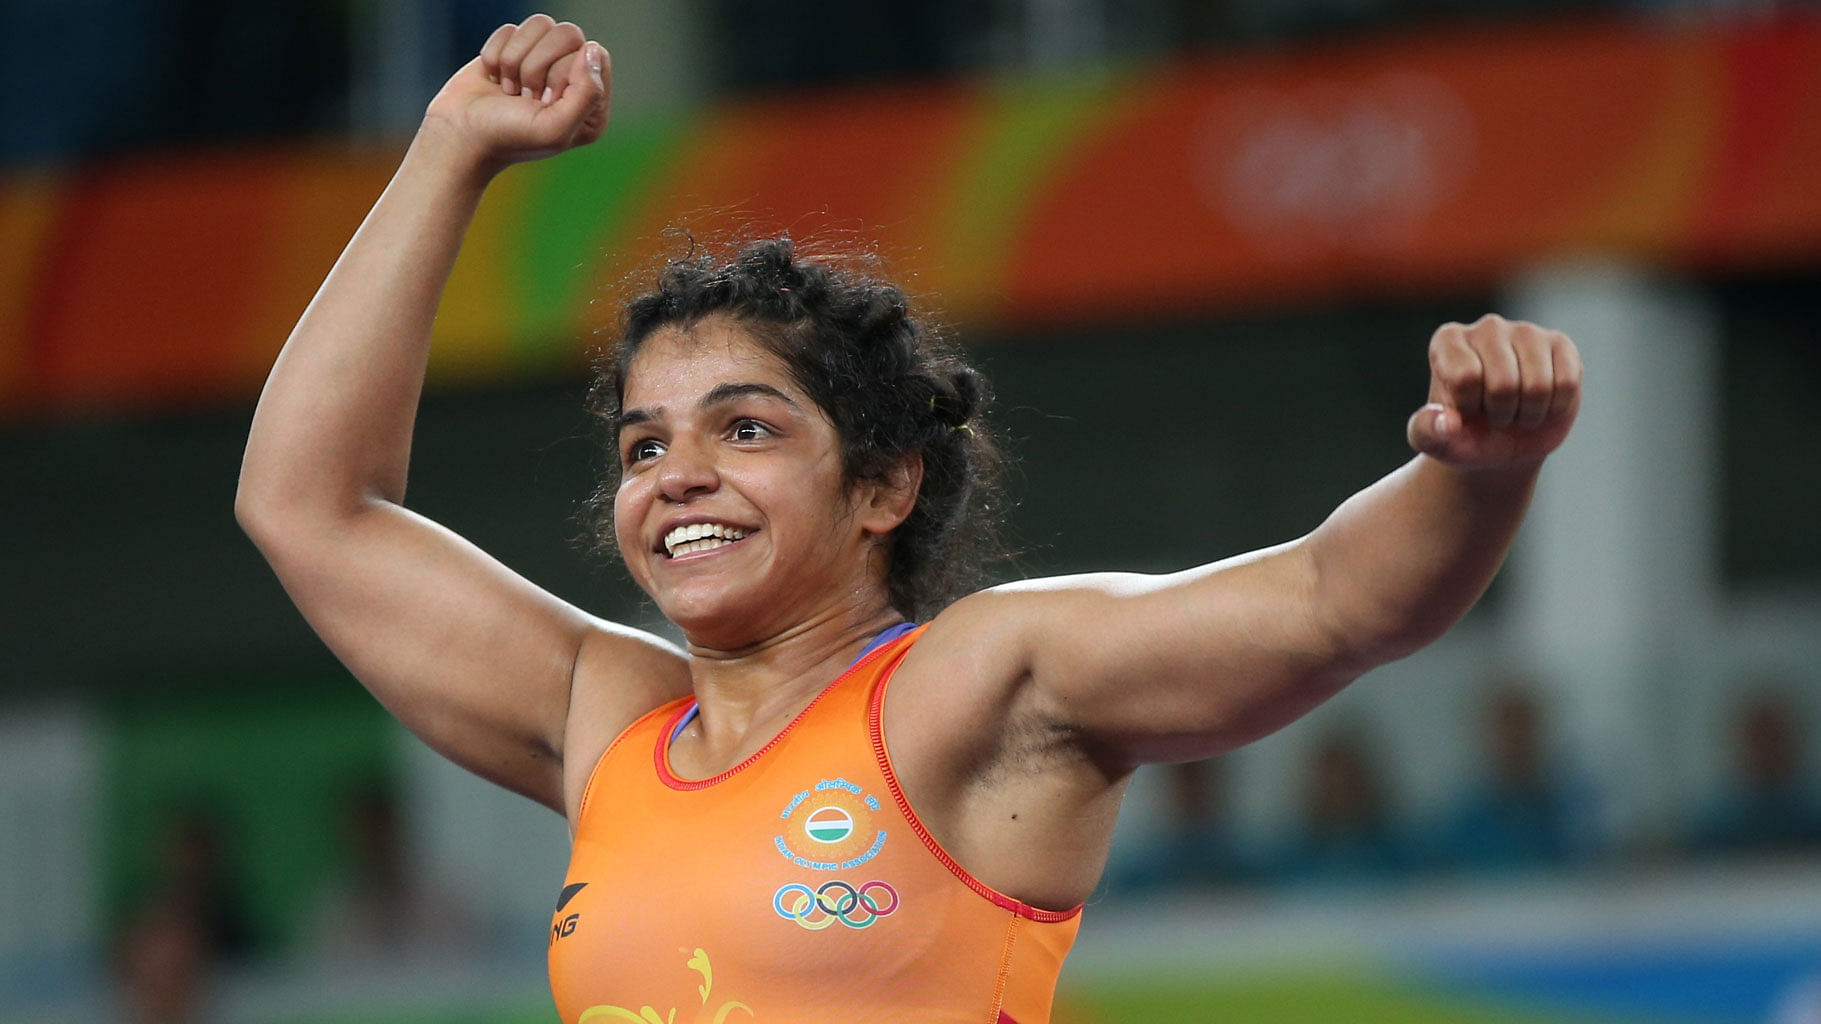 साक्षी मलिक ने 2016 ओलंपिक में भारत के लिए ब्रॉन्ज मेडल जीता था